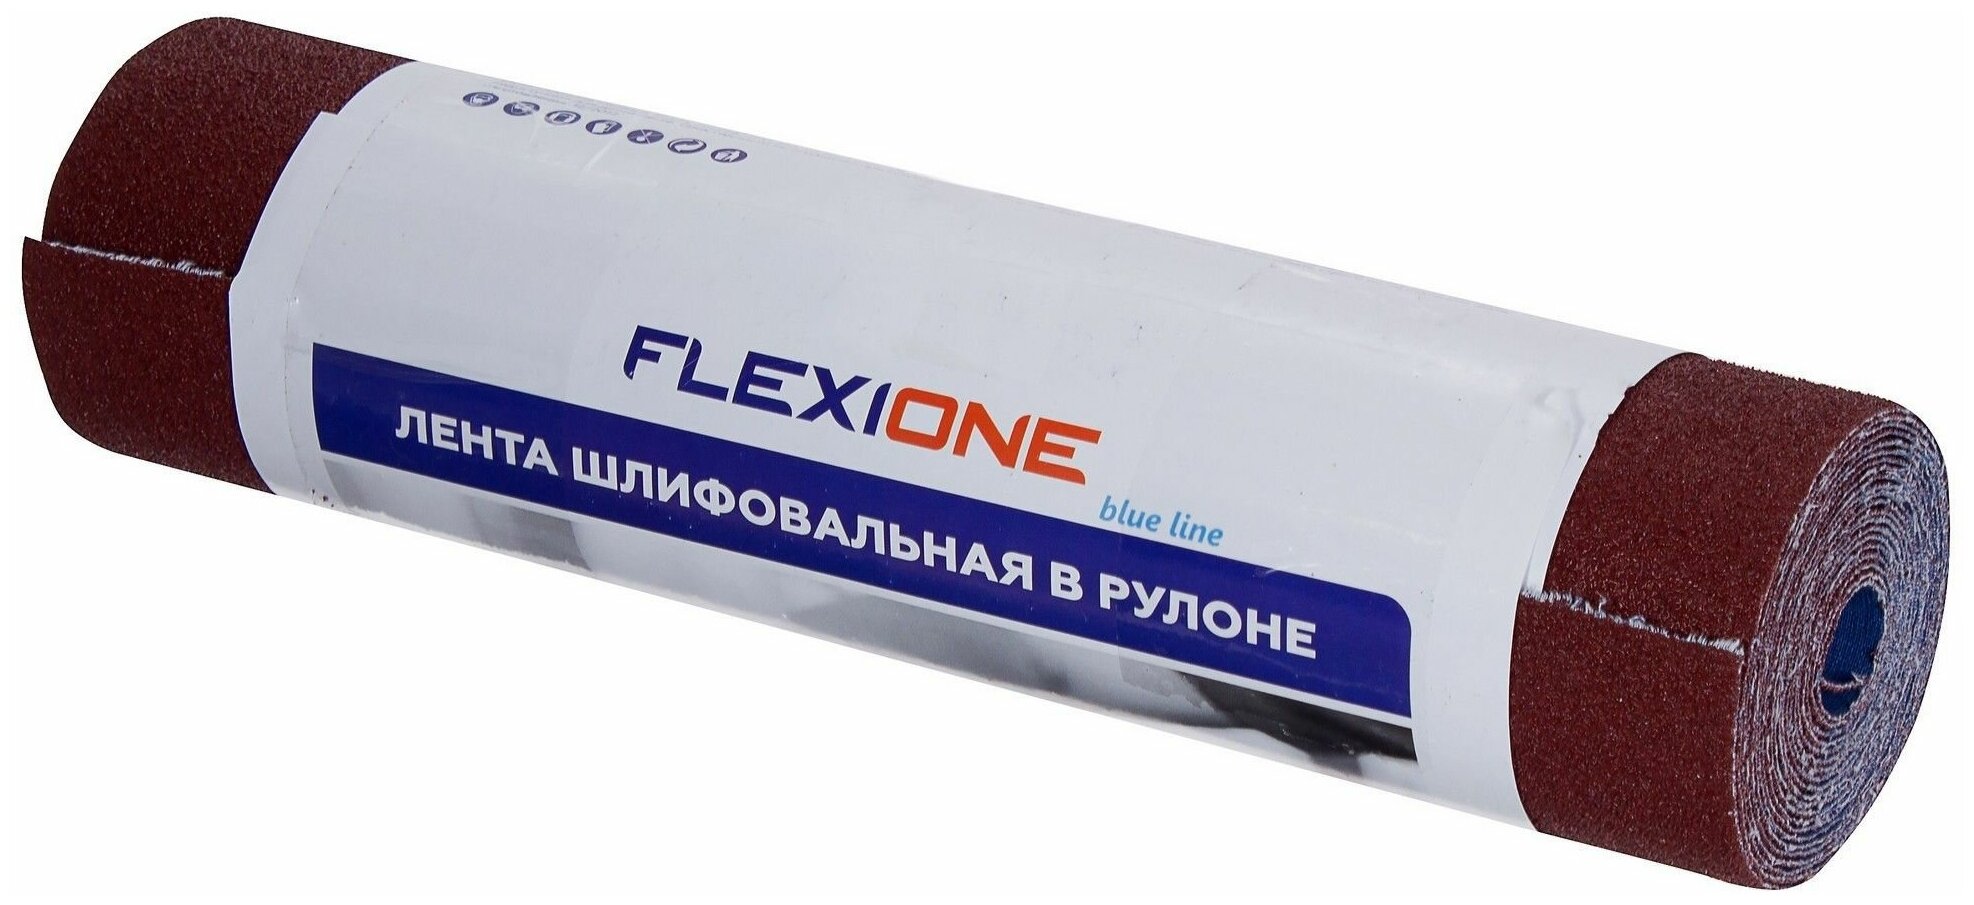 Рулон шлифовальный Flexione P80, 280x3000 мм